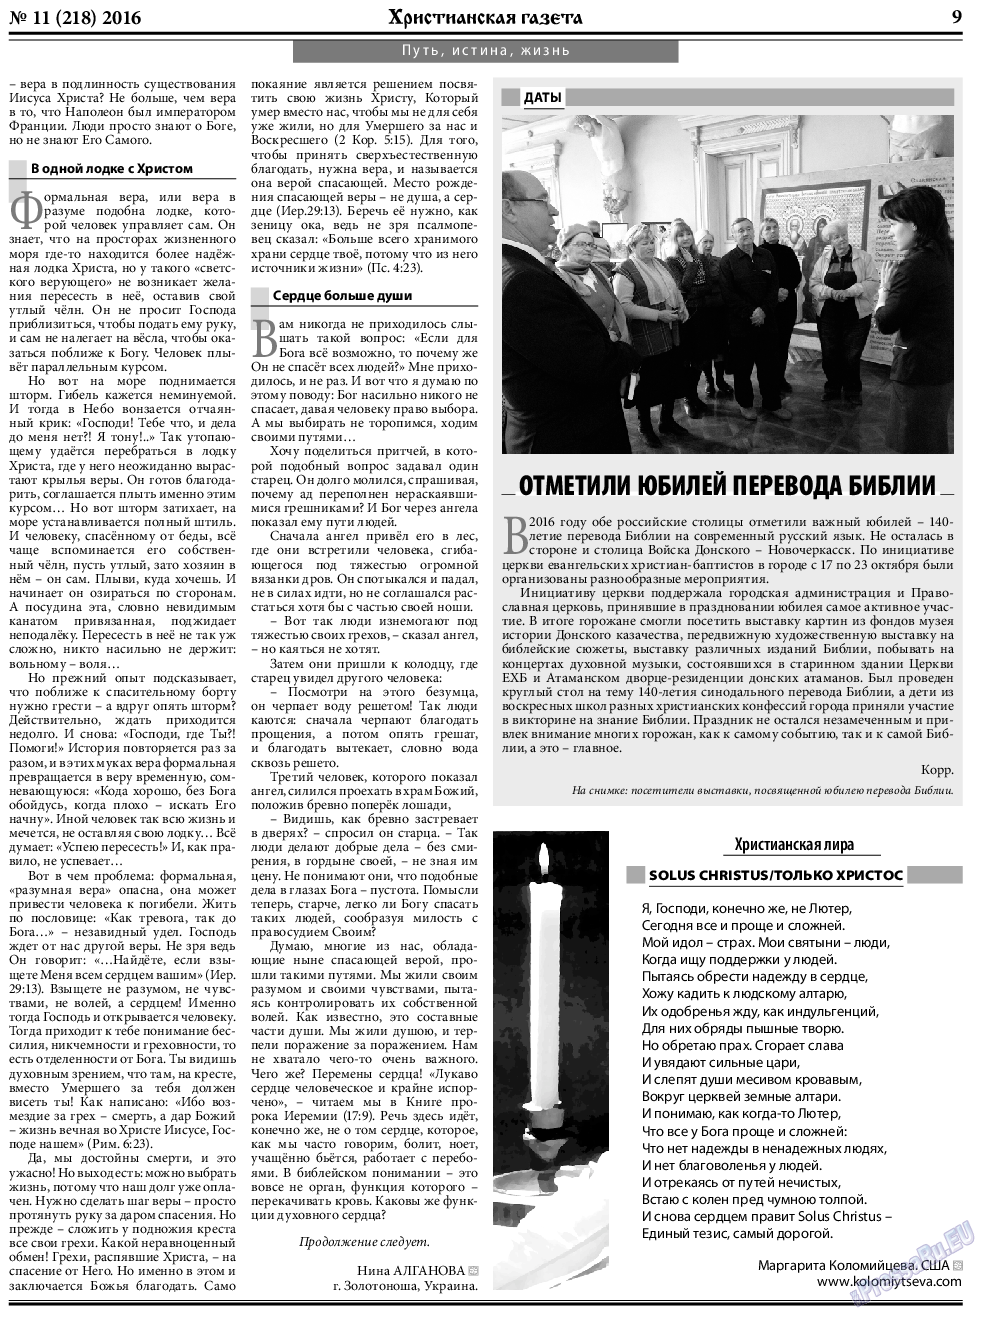 Христианская газета, газета. 2016 №11 стр.9